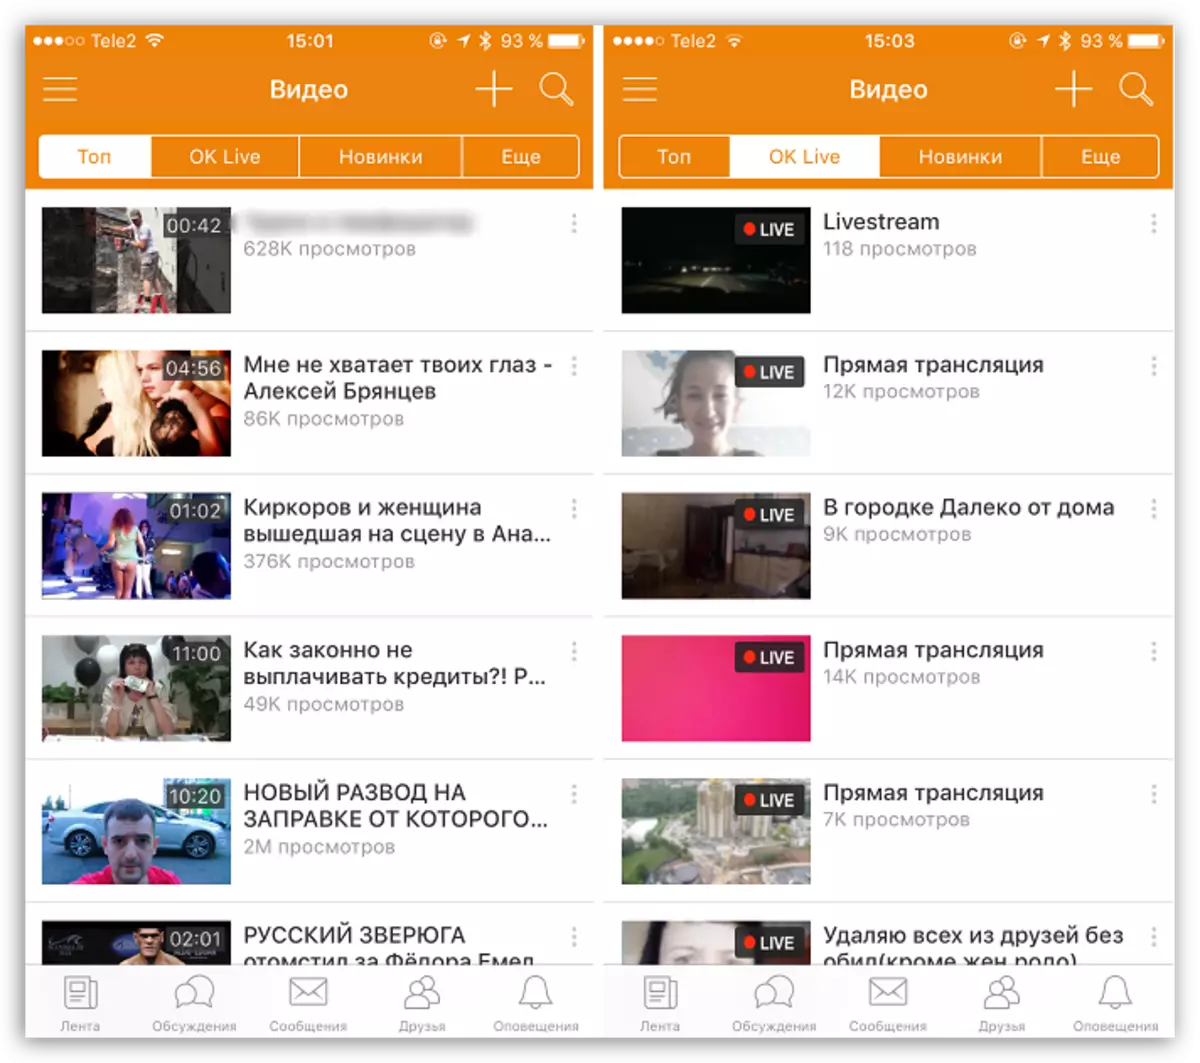 فيديو في تطبيقات Odnoklassniki لدائرة الرقابة الداخلية